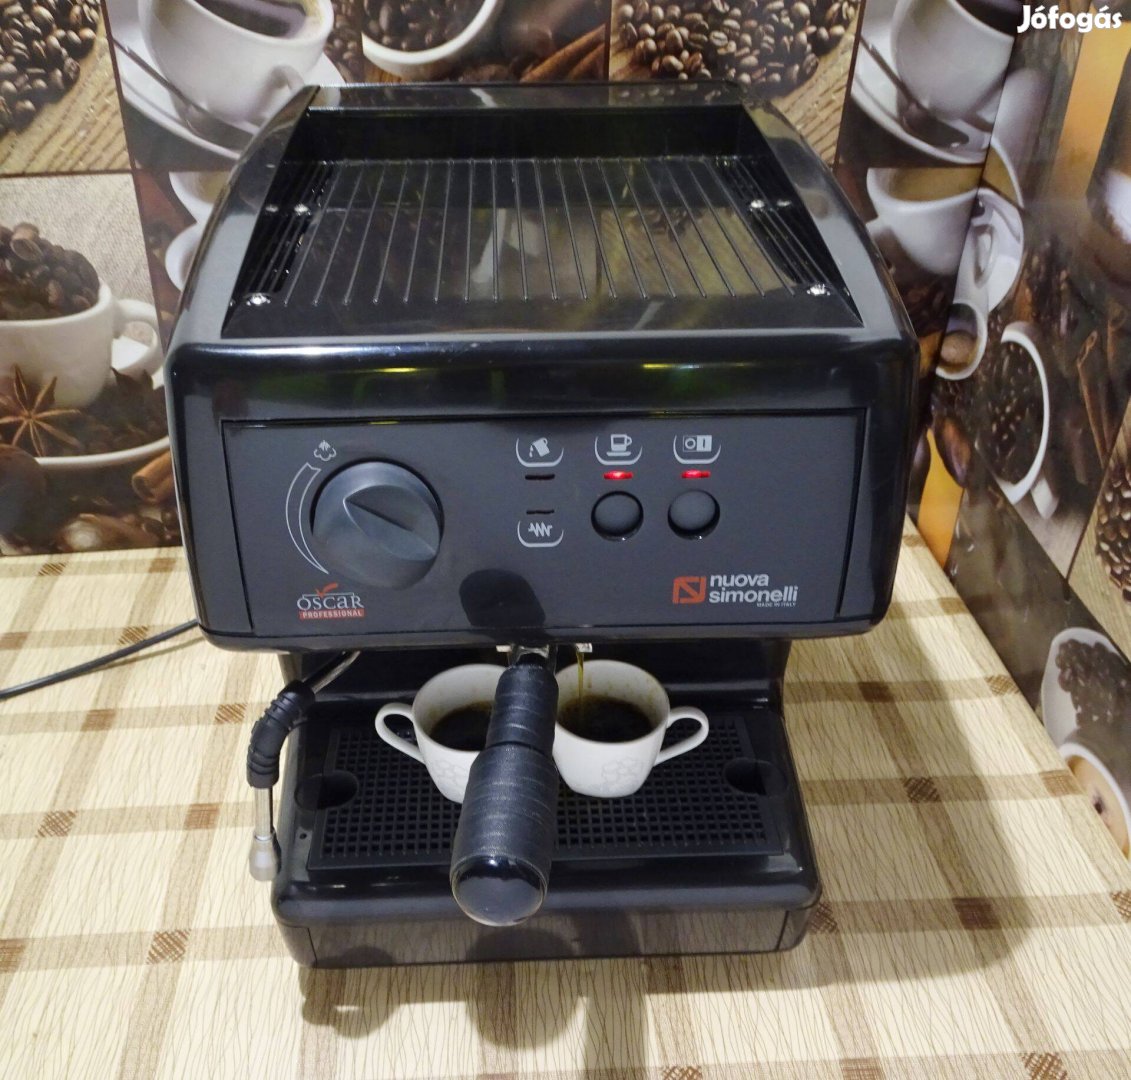 Nuova Simonelli Oscar Professional karos kávégép presszógép kávéfőző